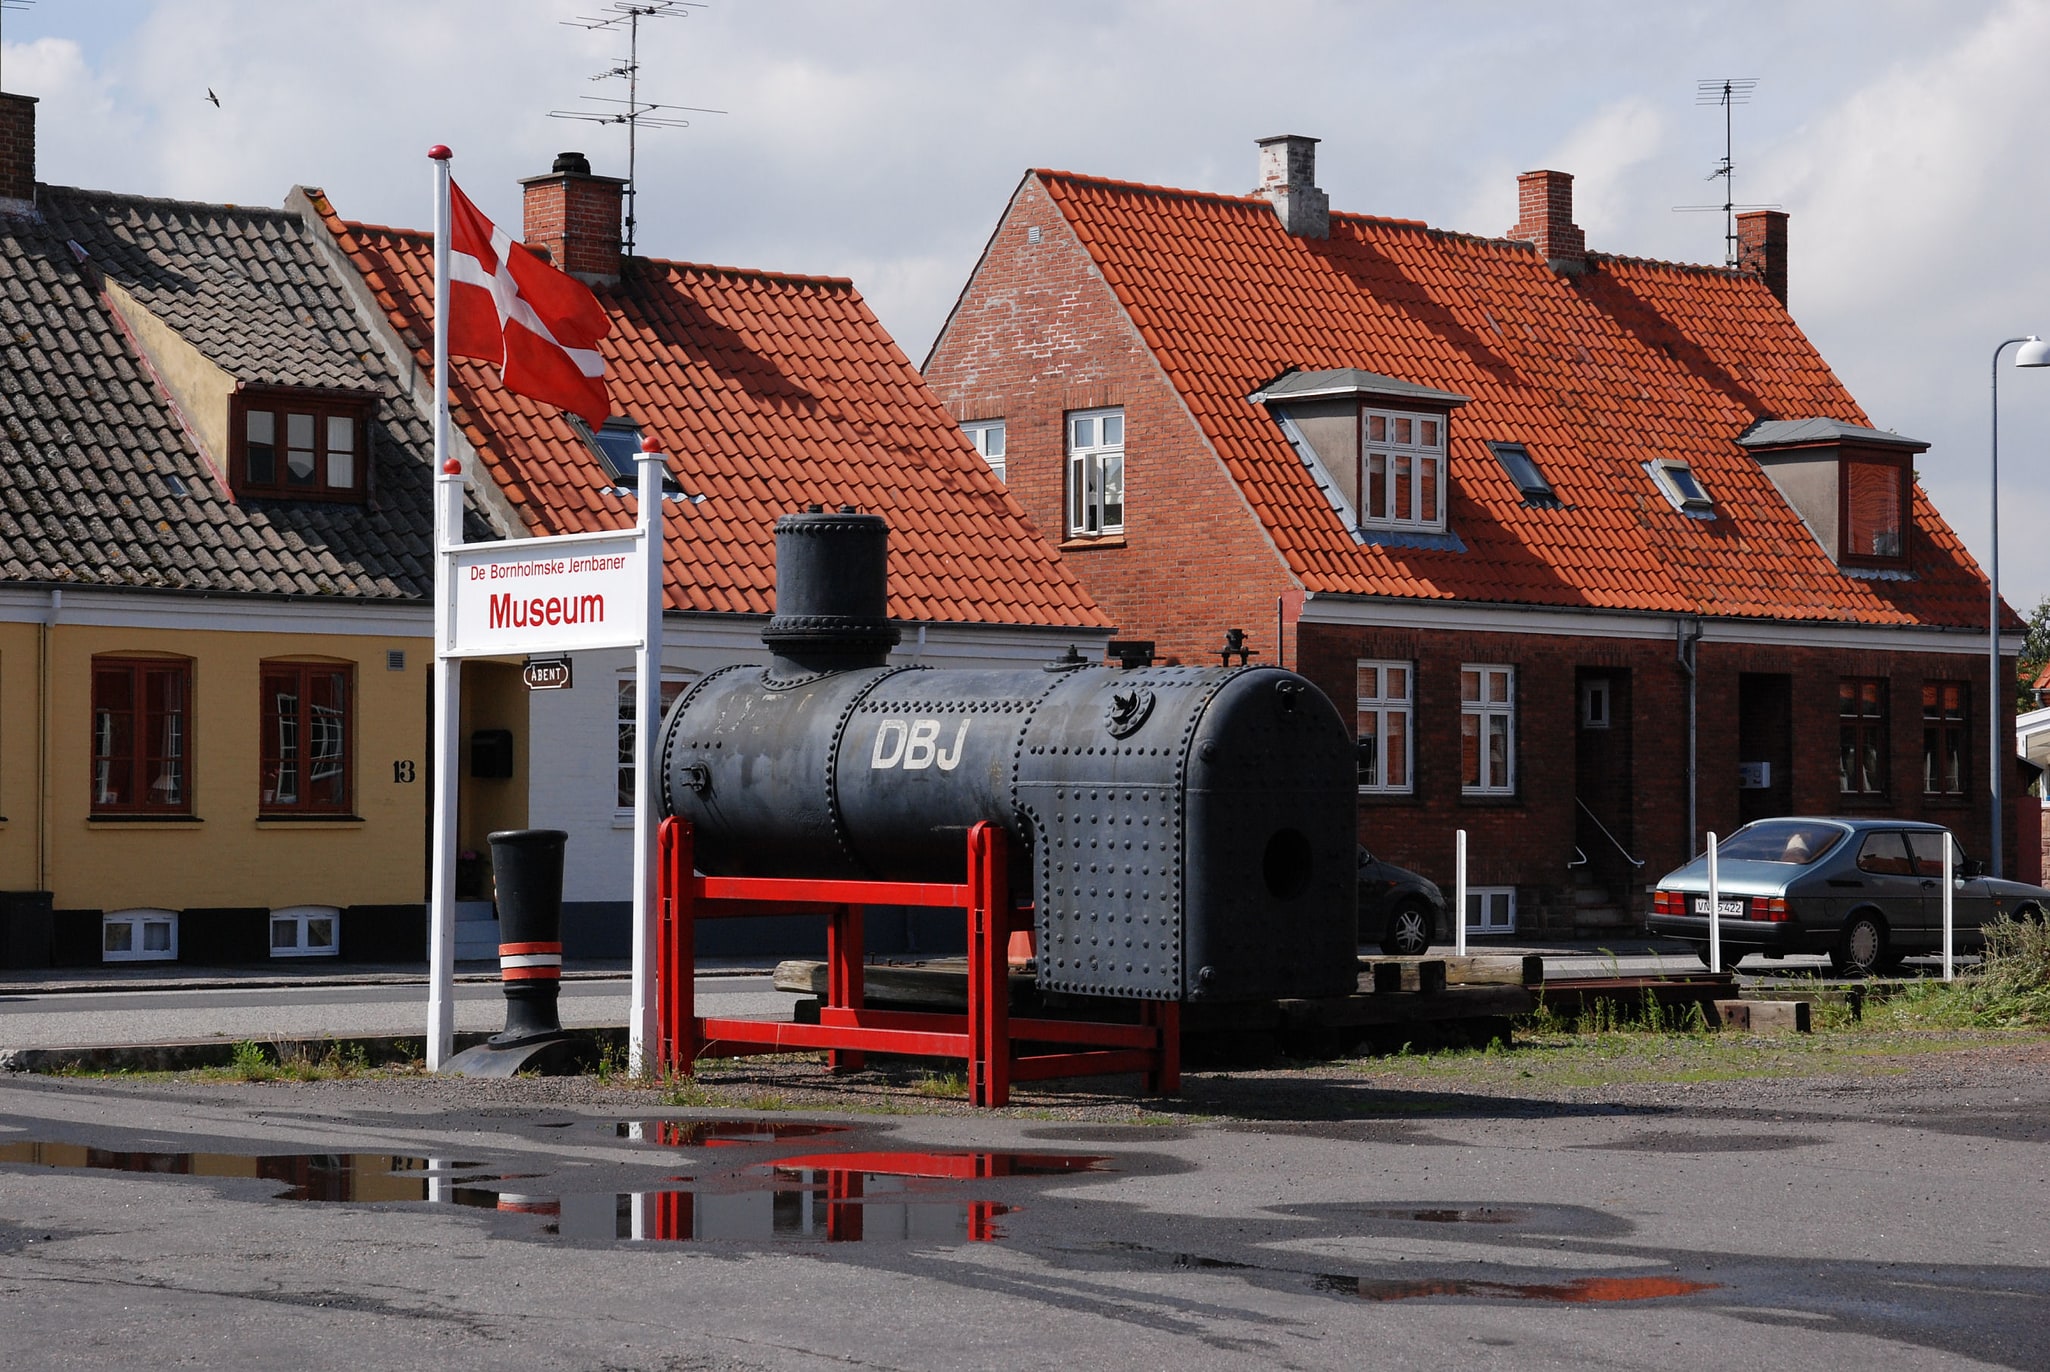 Neksø, Denmark